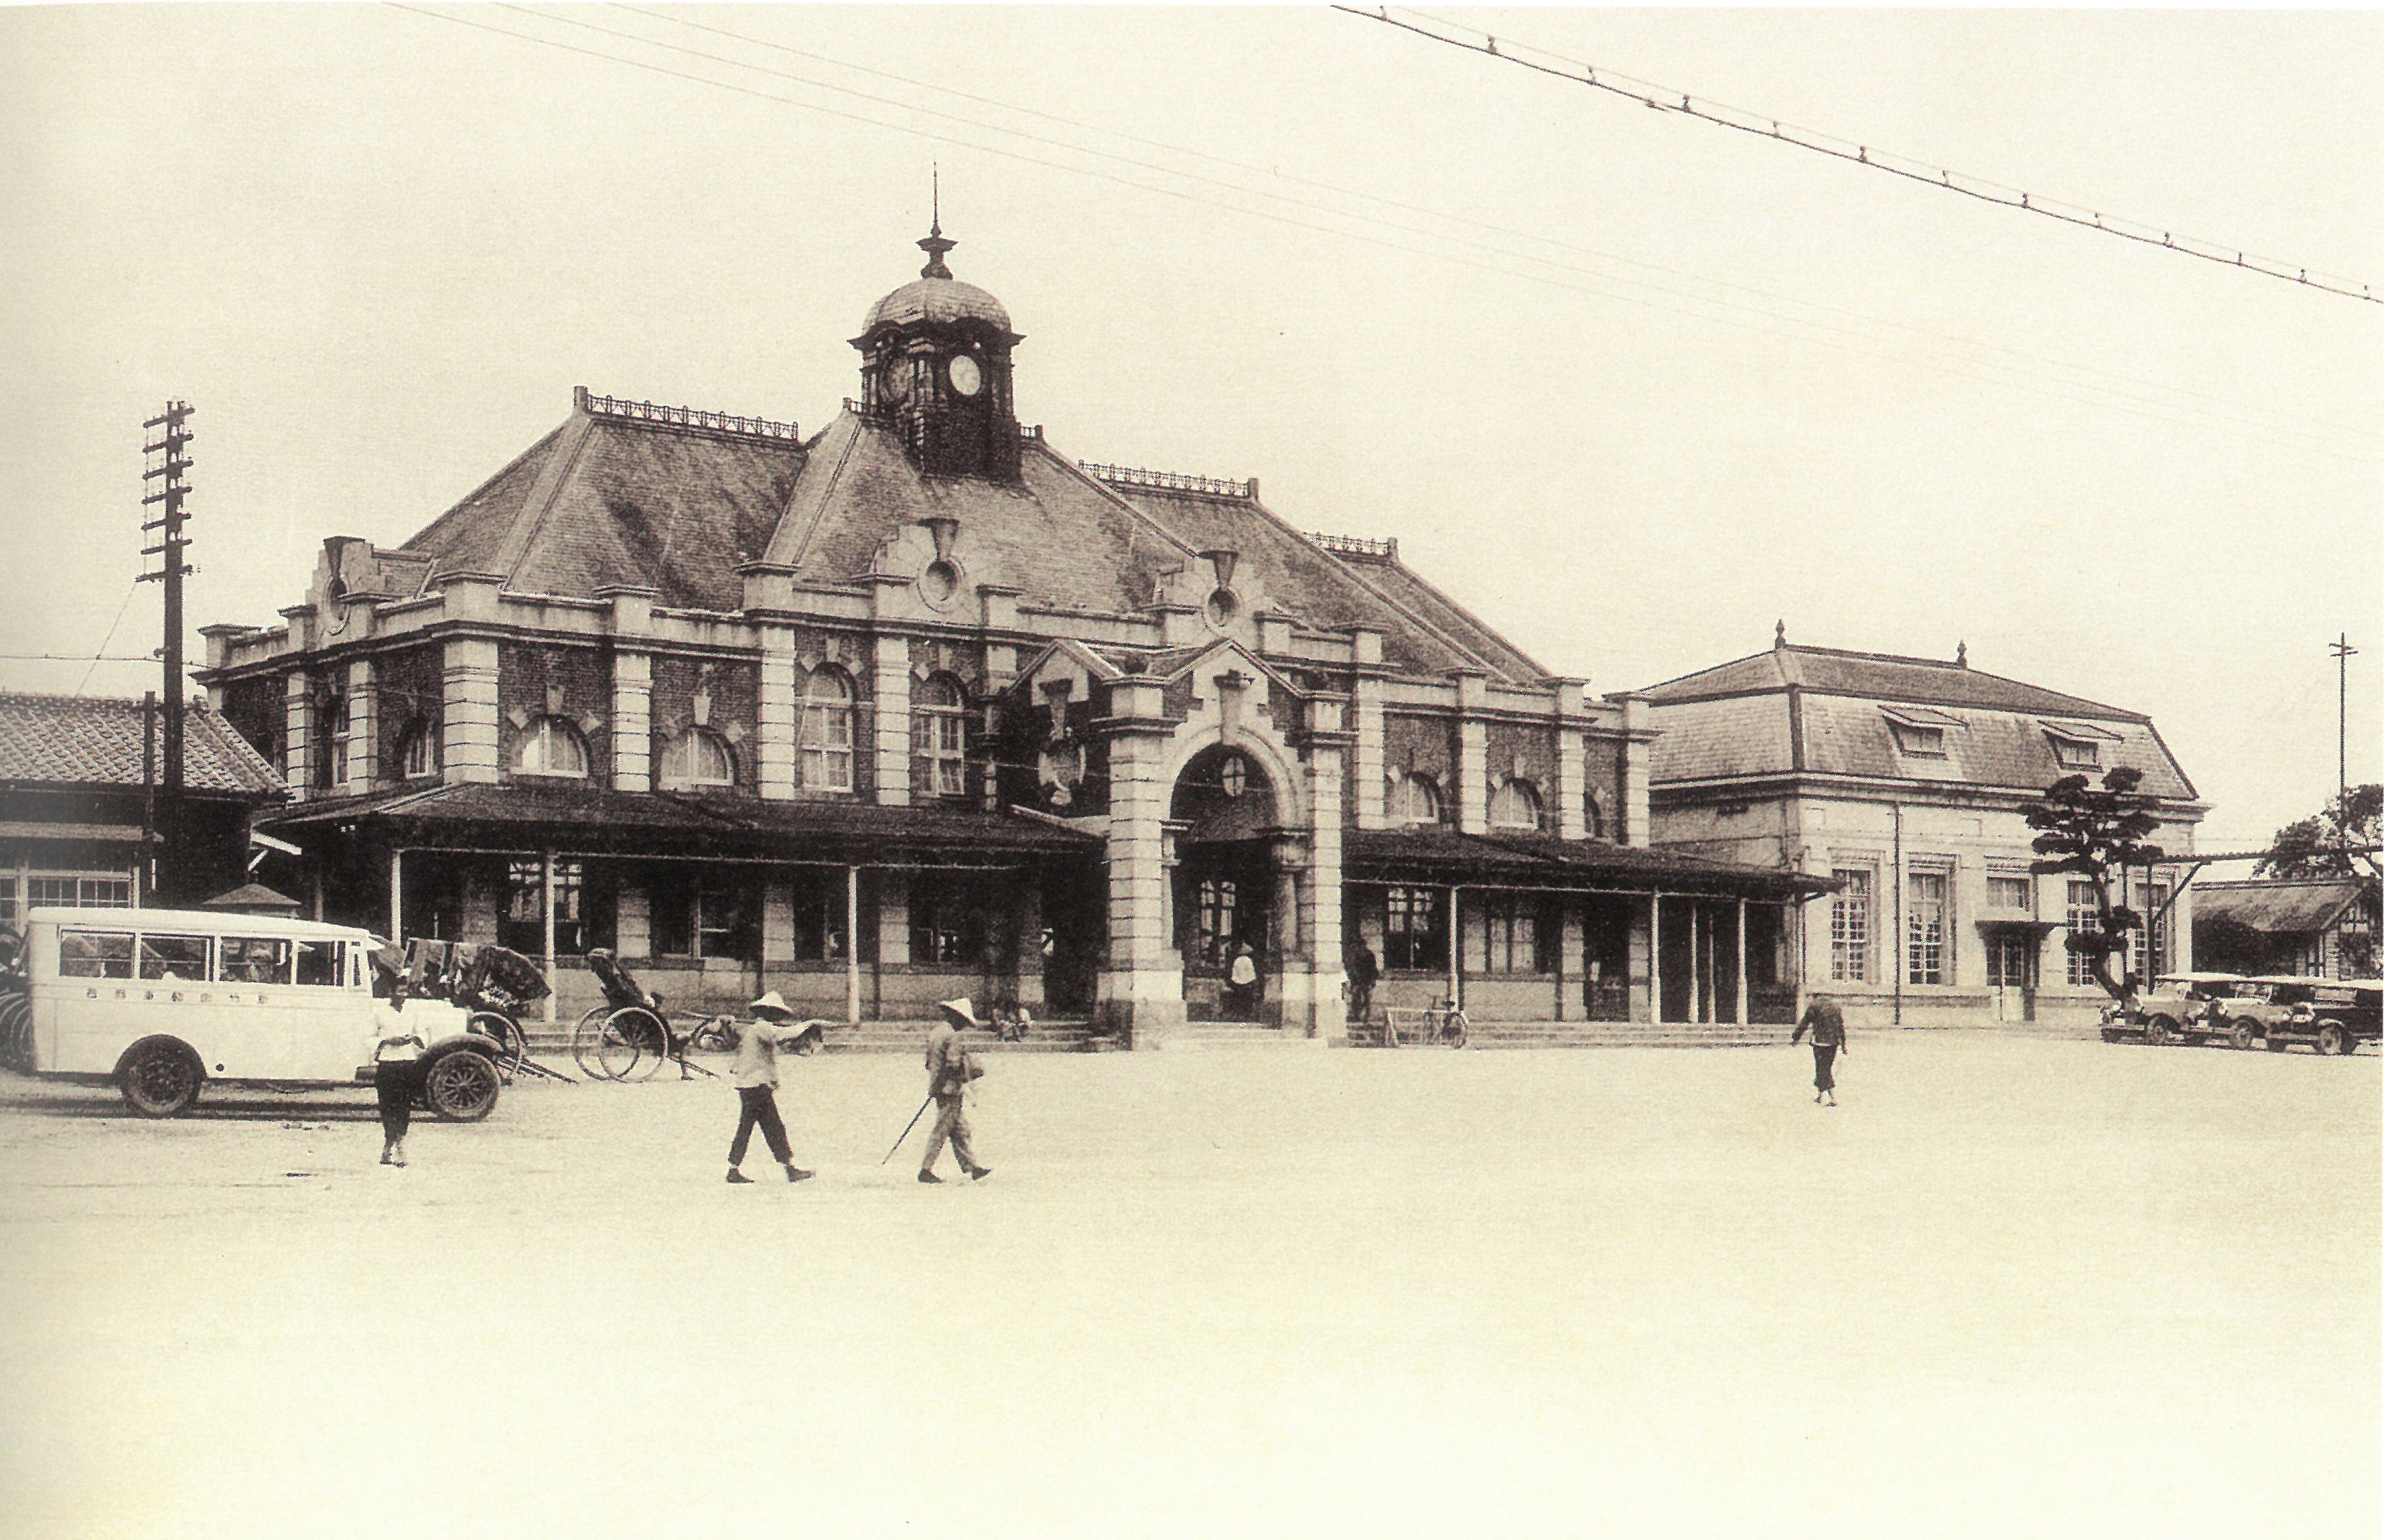 竹市鐵道藝術村「時光機」展 老照片帶您飛越新竹鐵道百年史